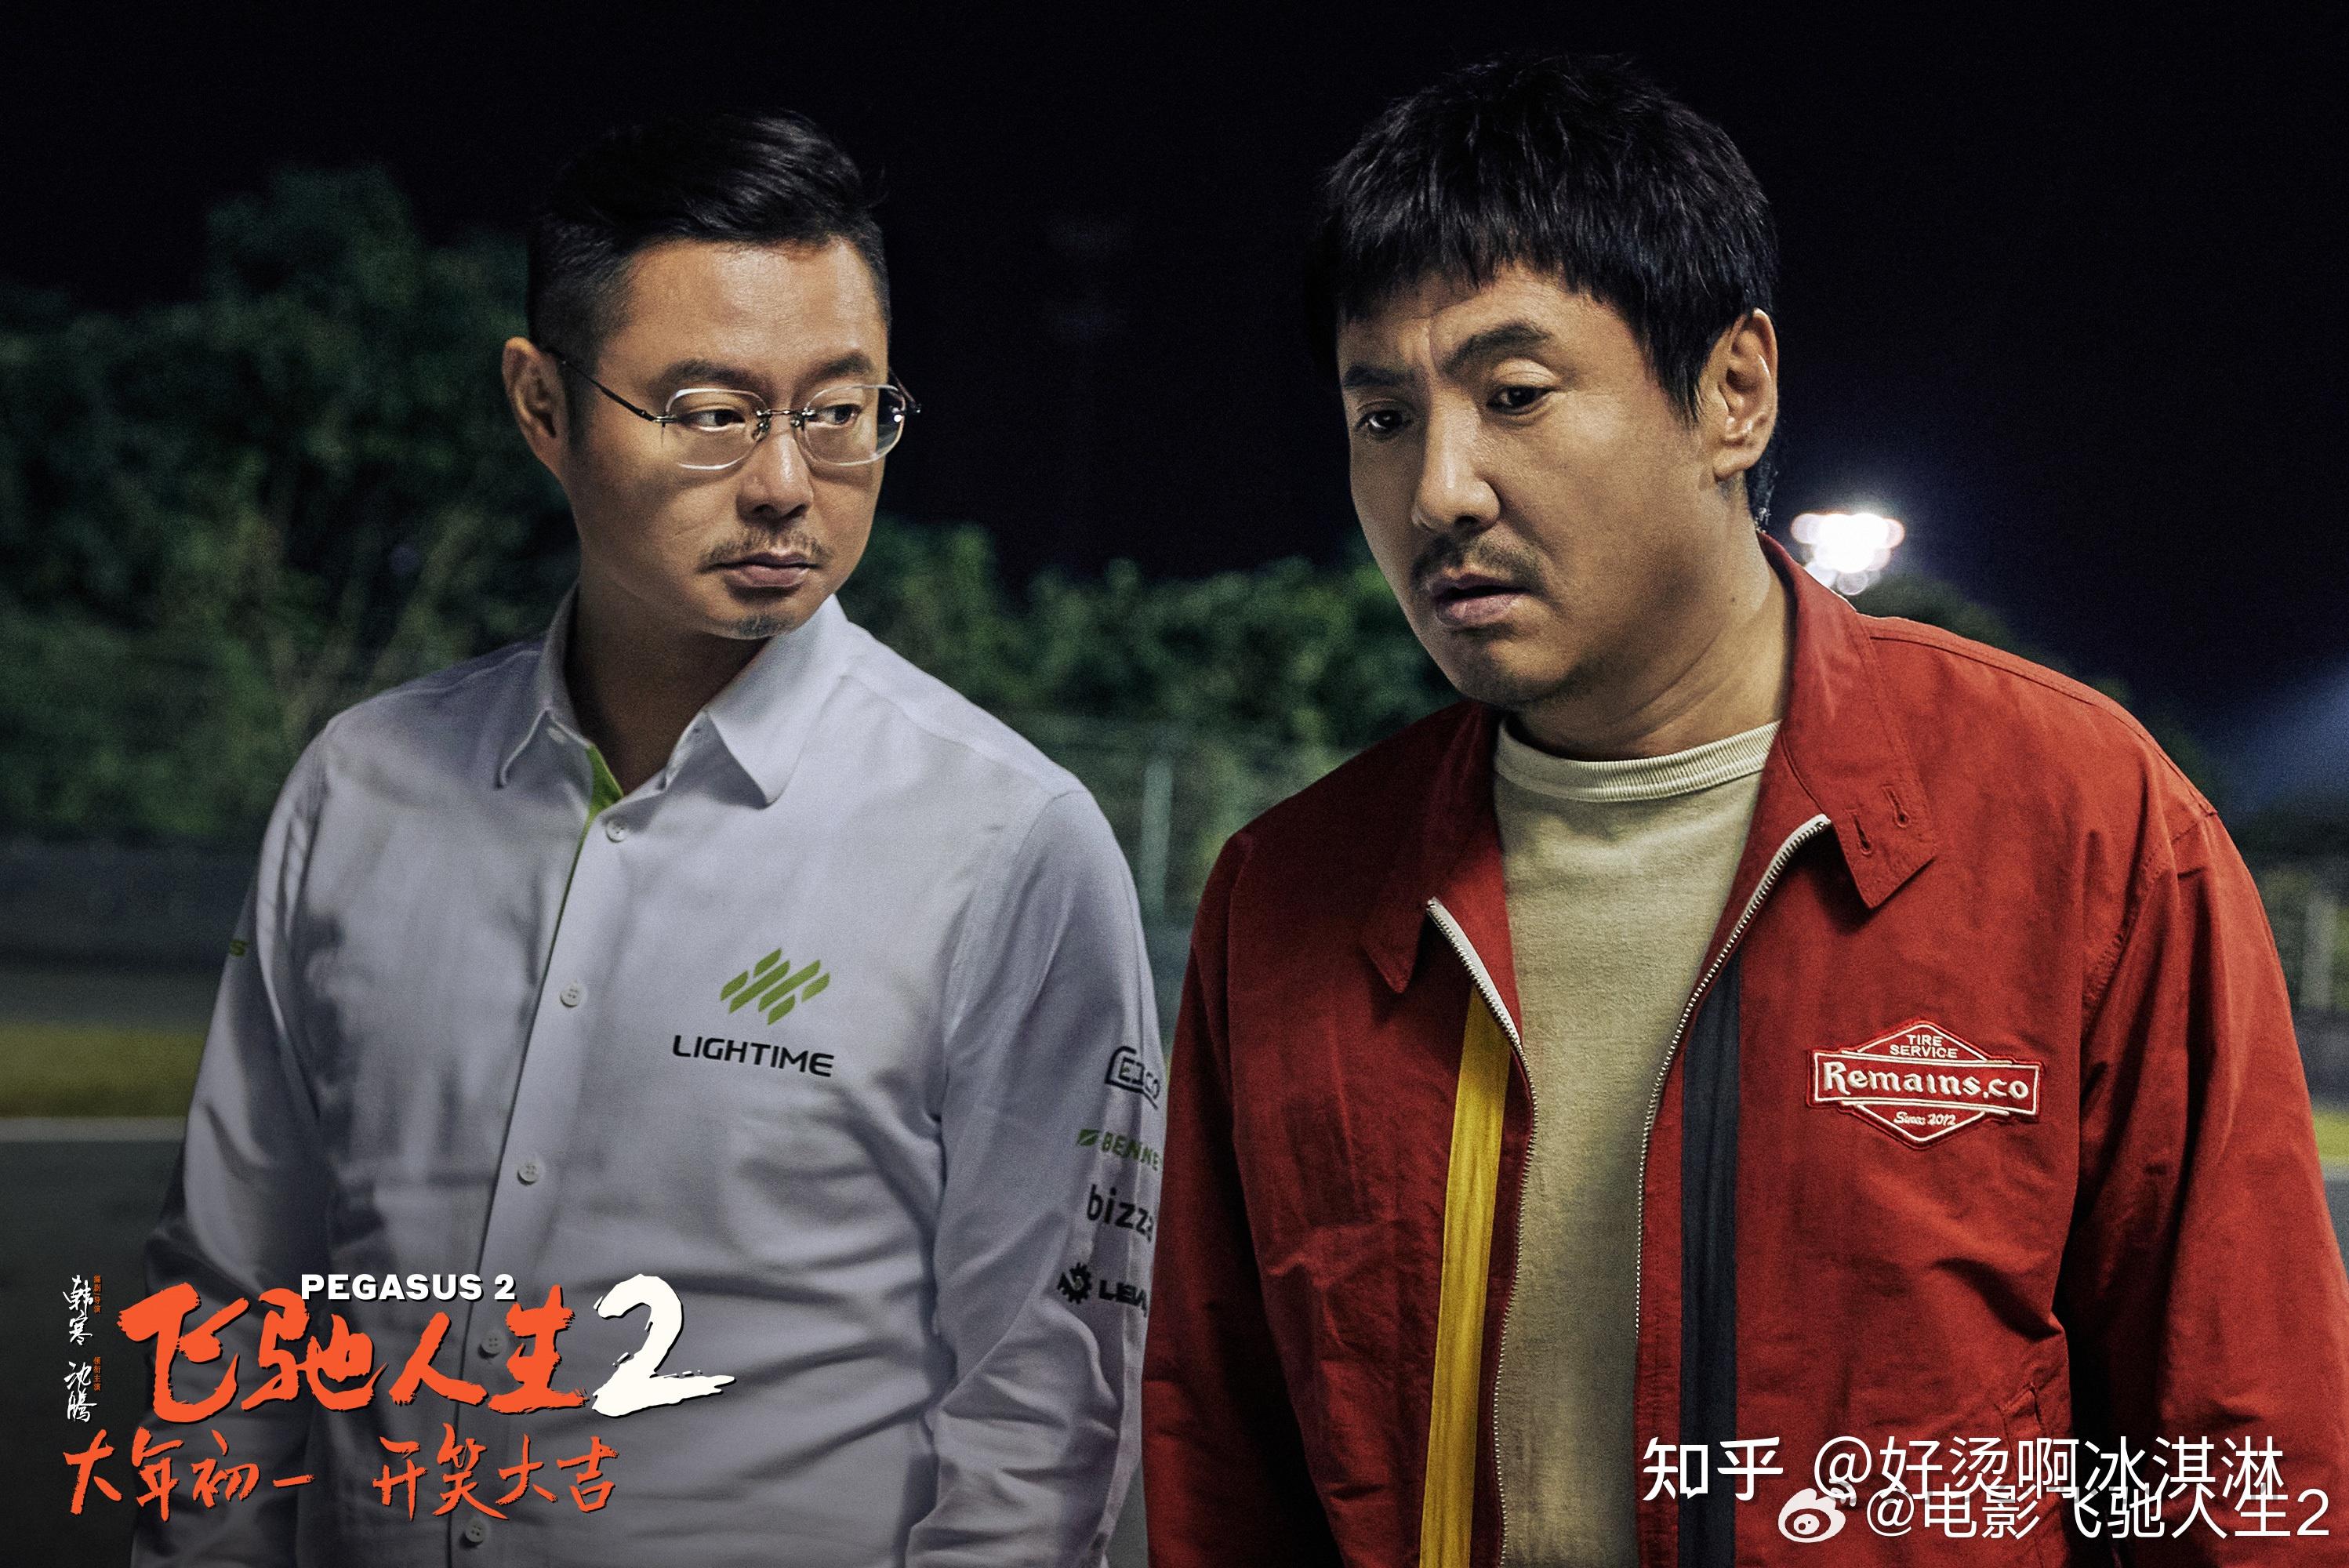 如何评价韩寒执导,沈腾,范丞丞主演的电影《飞驰人生 2》?